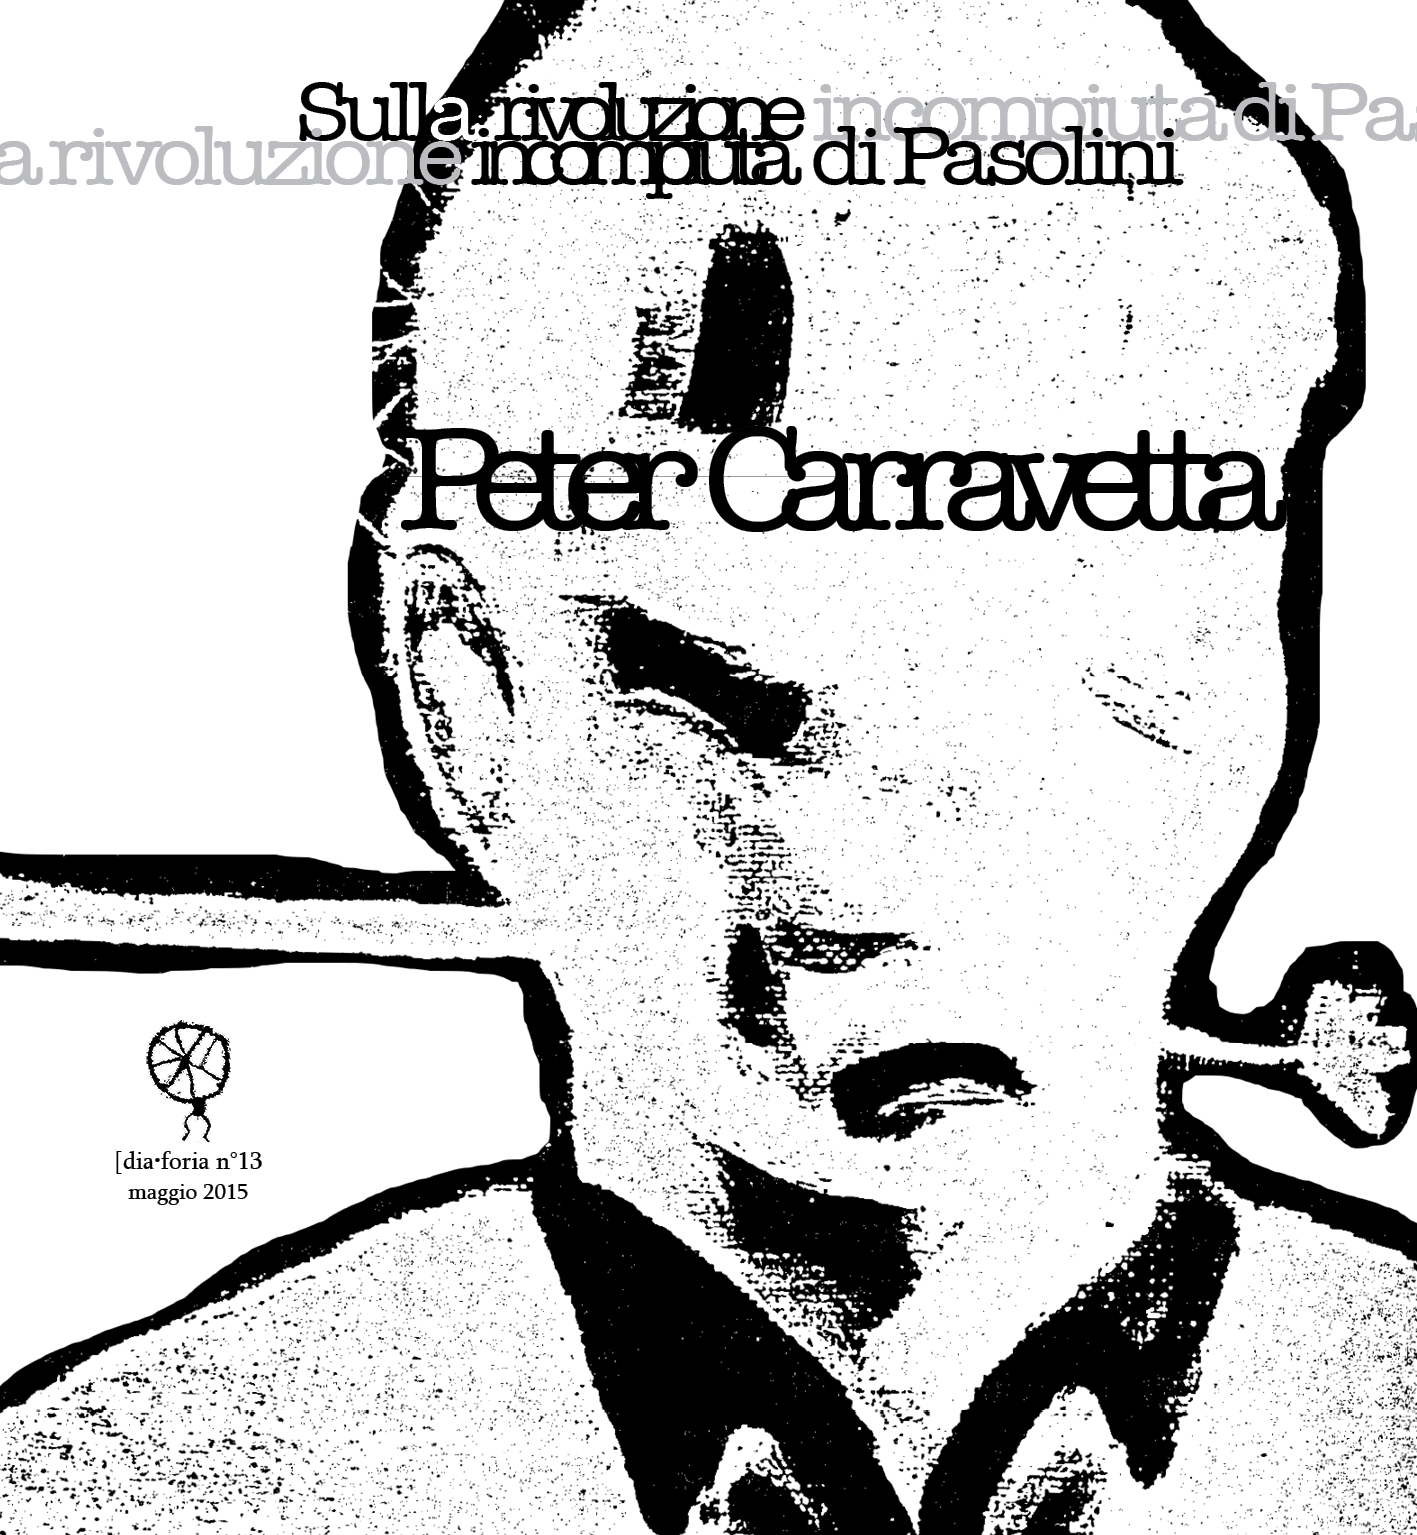 [dia•foria #13 – Peter Carravetta – Sulla rivoluzione incompiuta di Pasolini